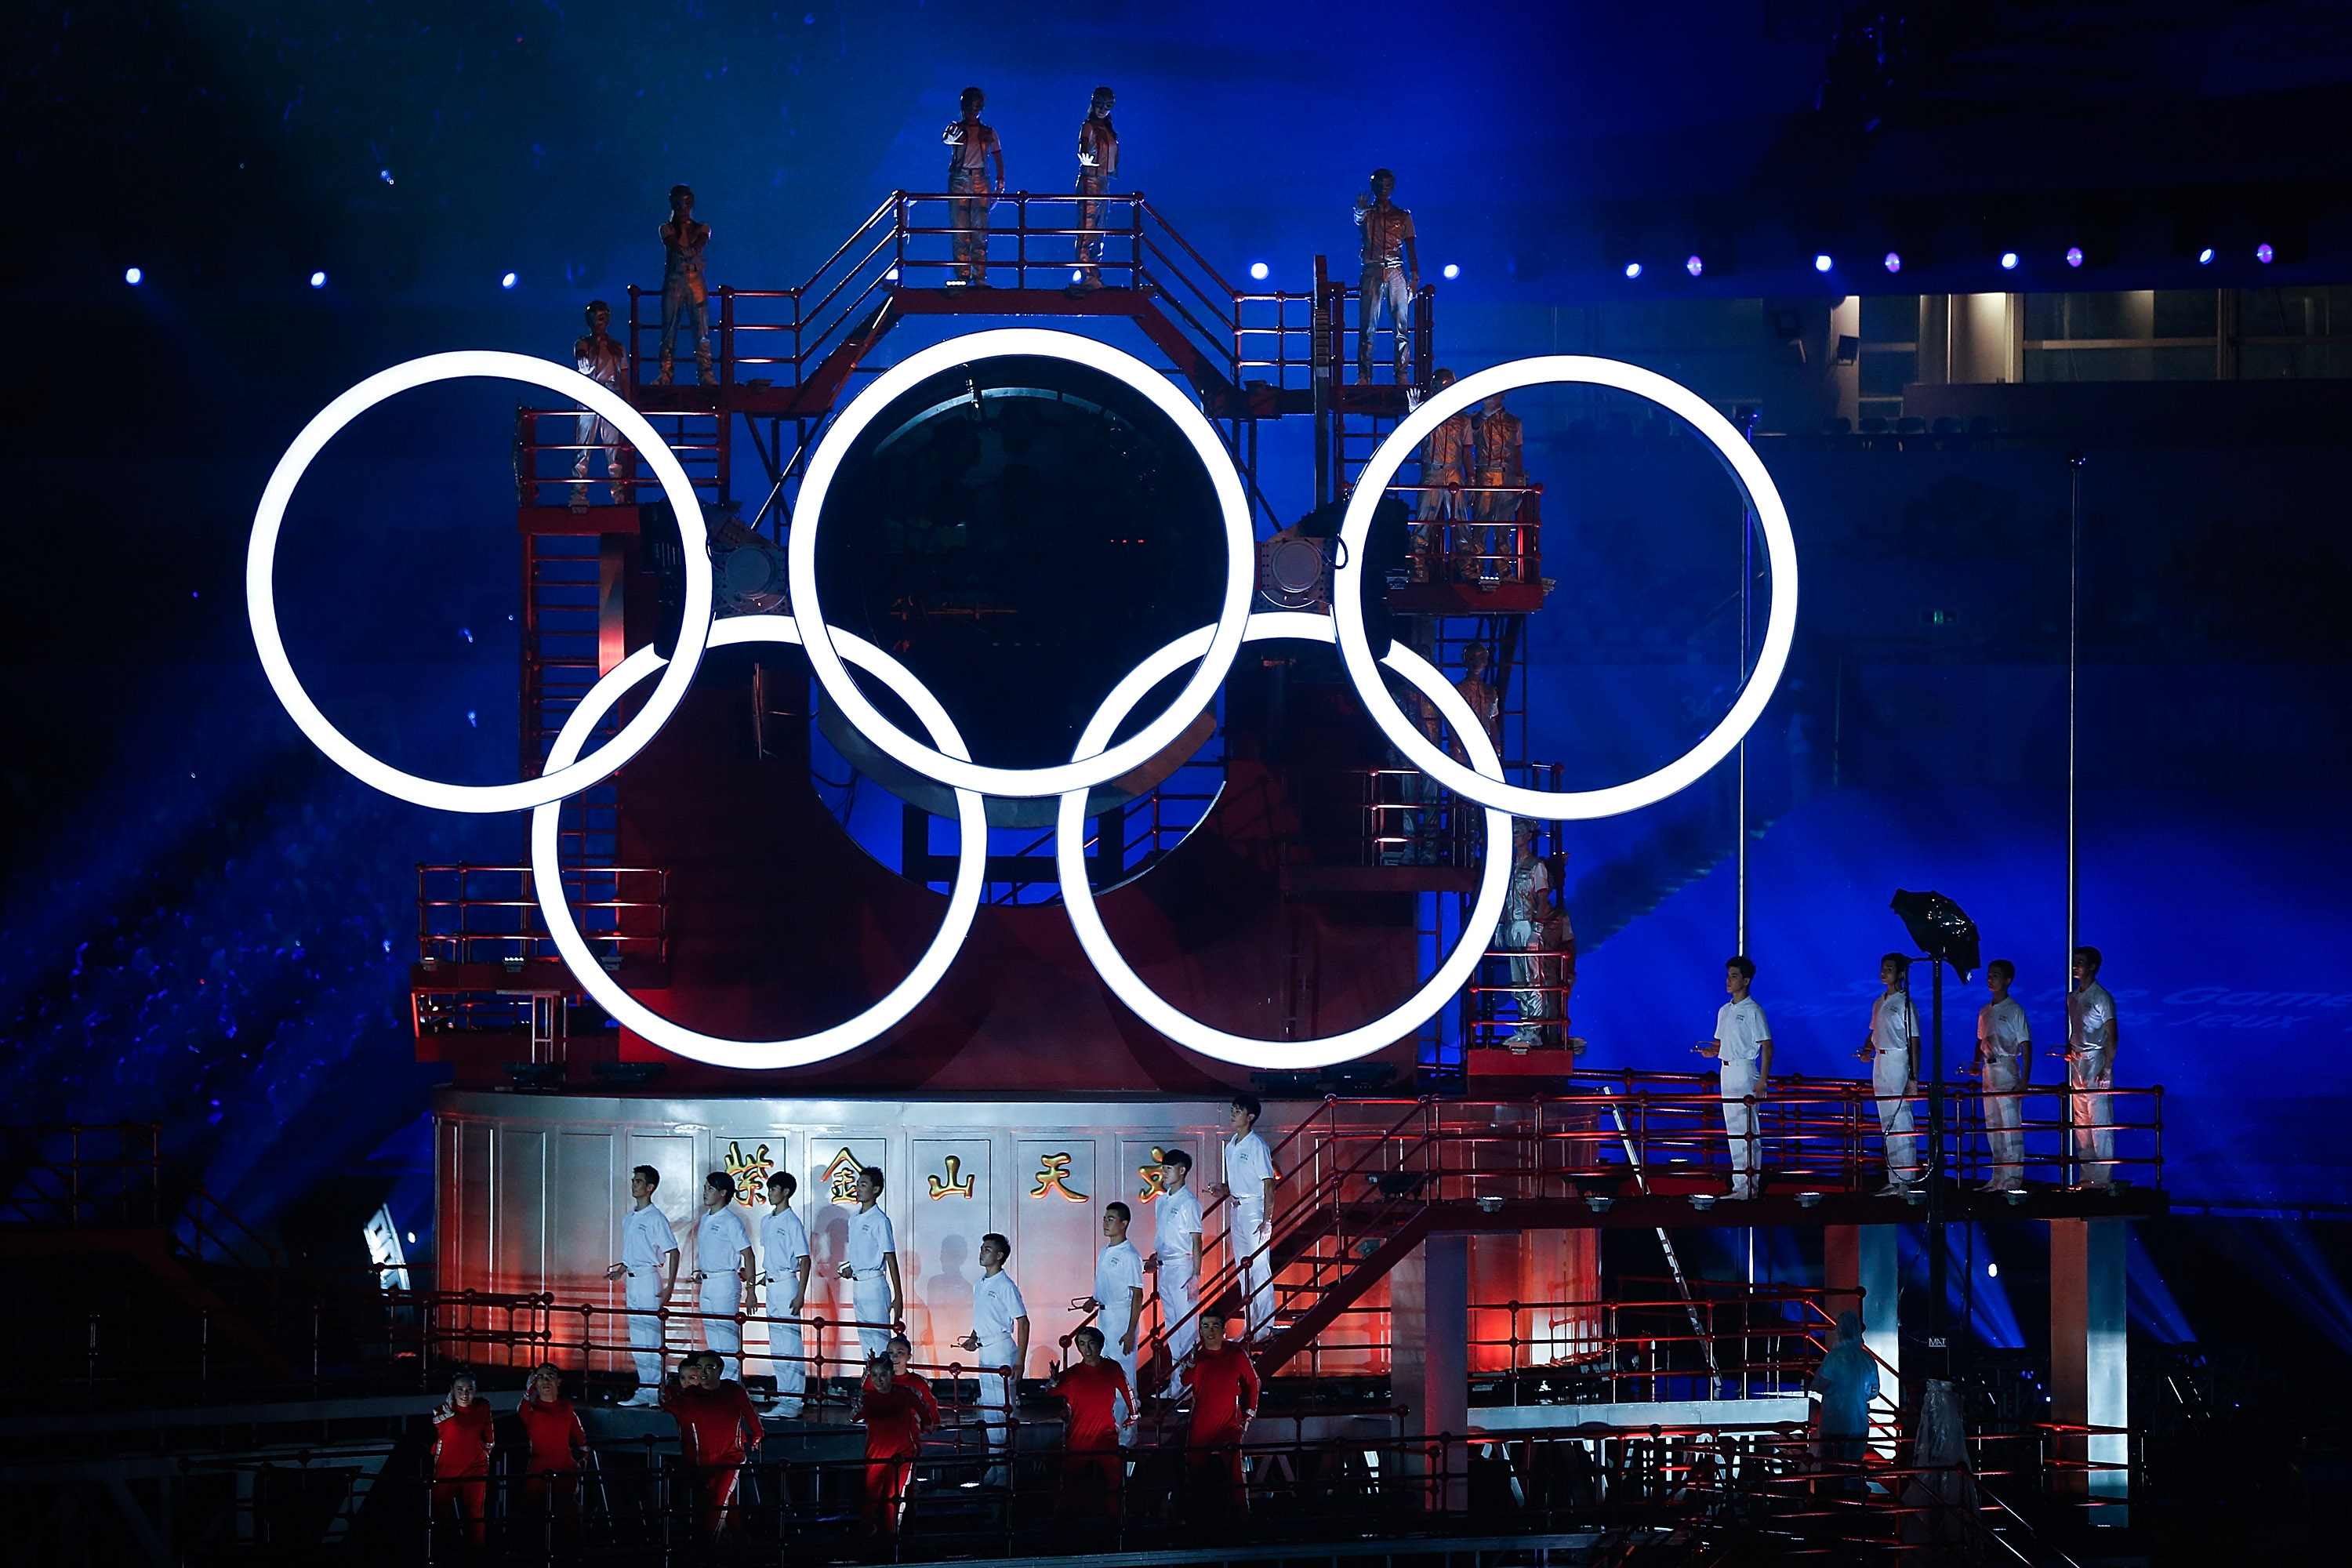 Летние олимпийские игры проходили в россии